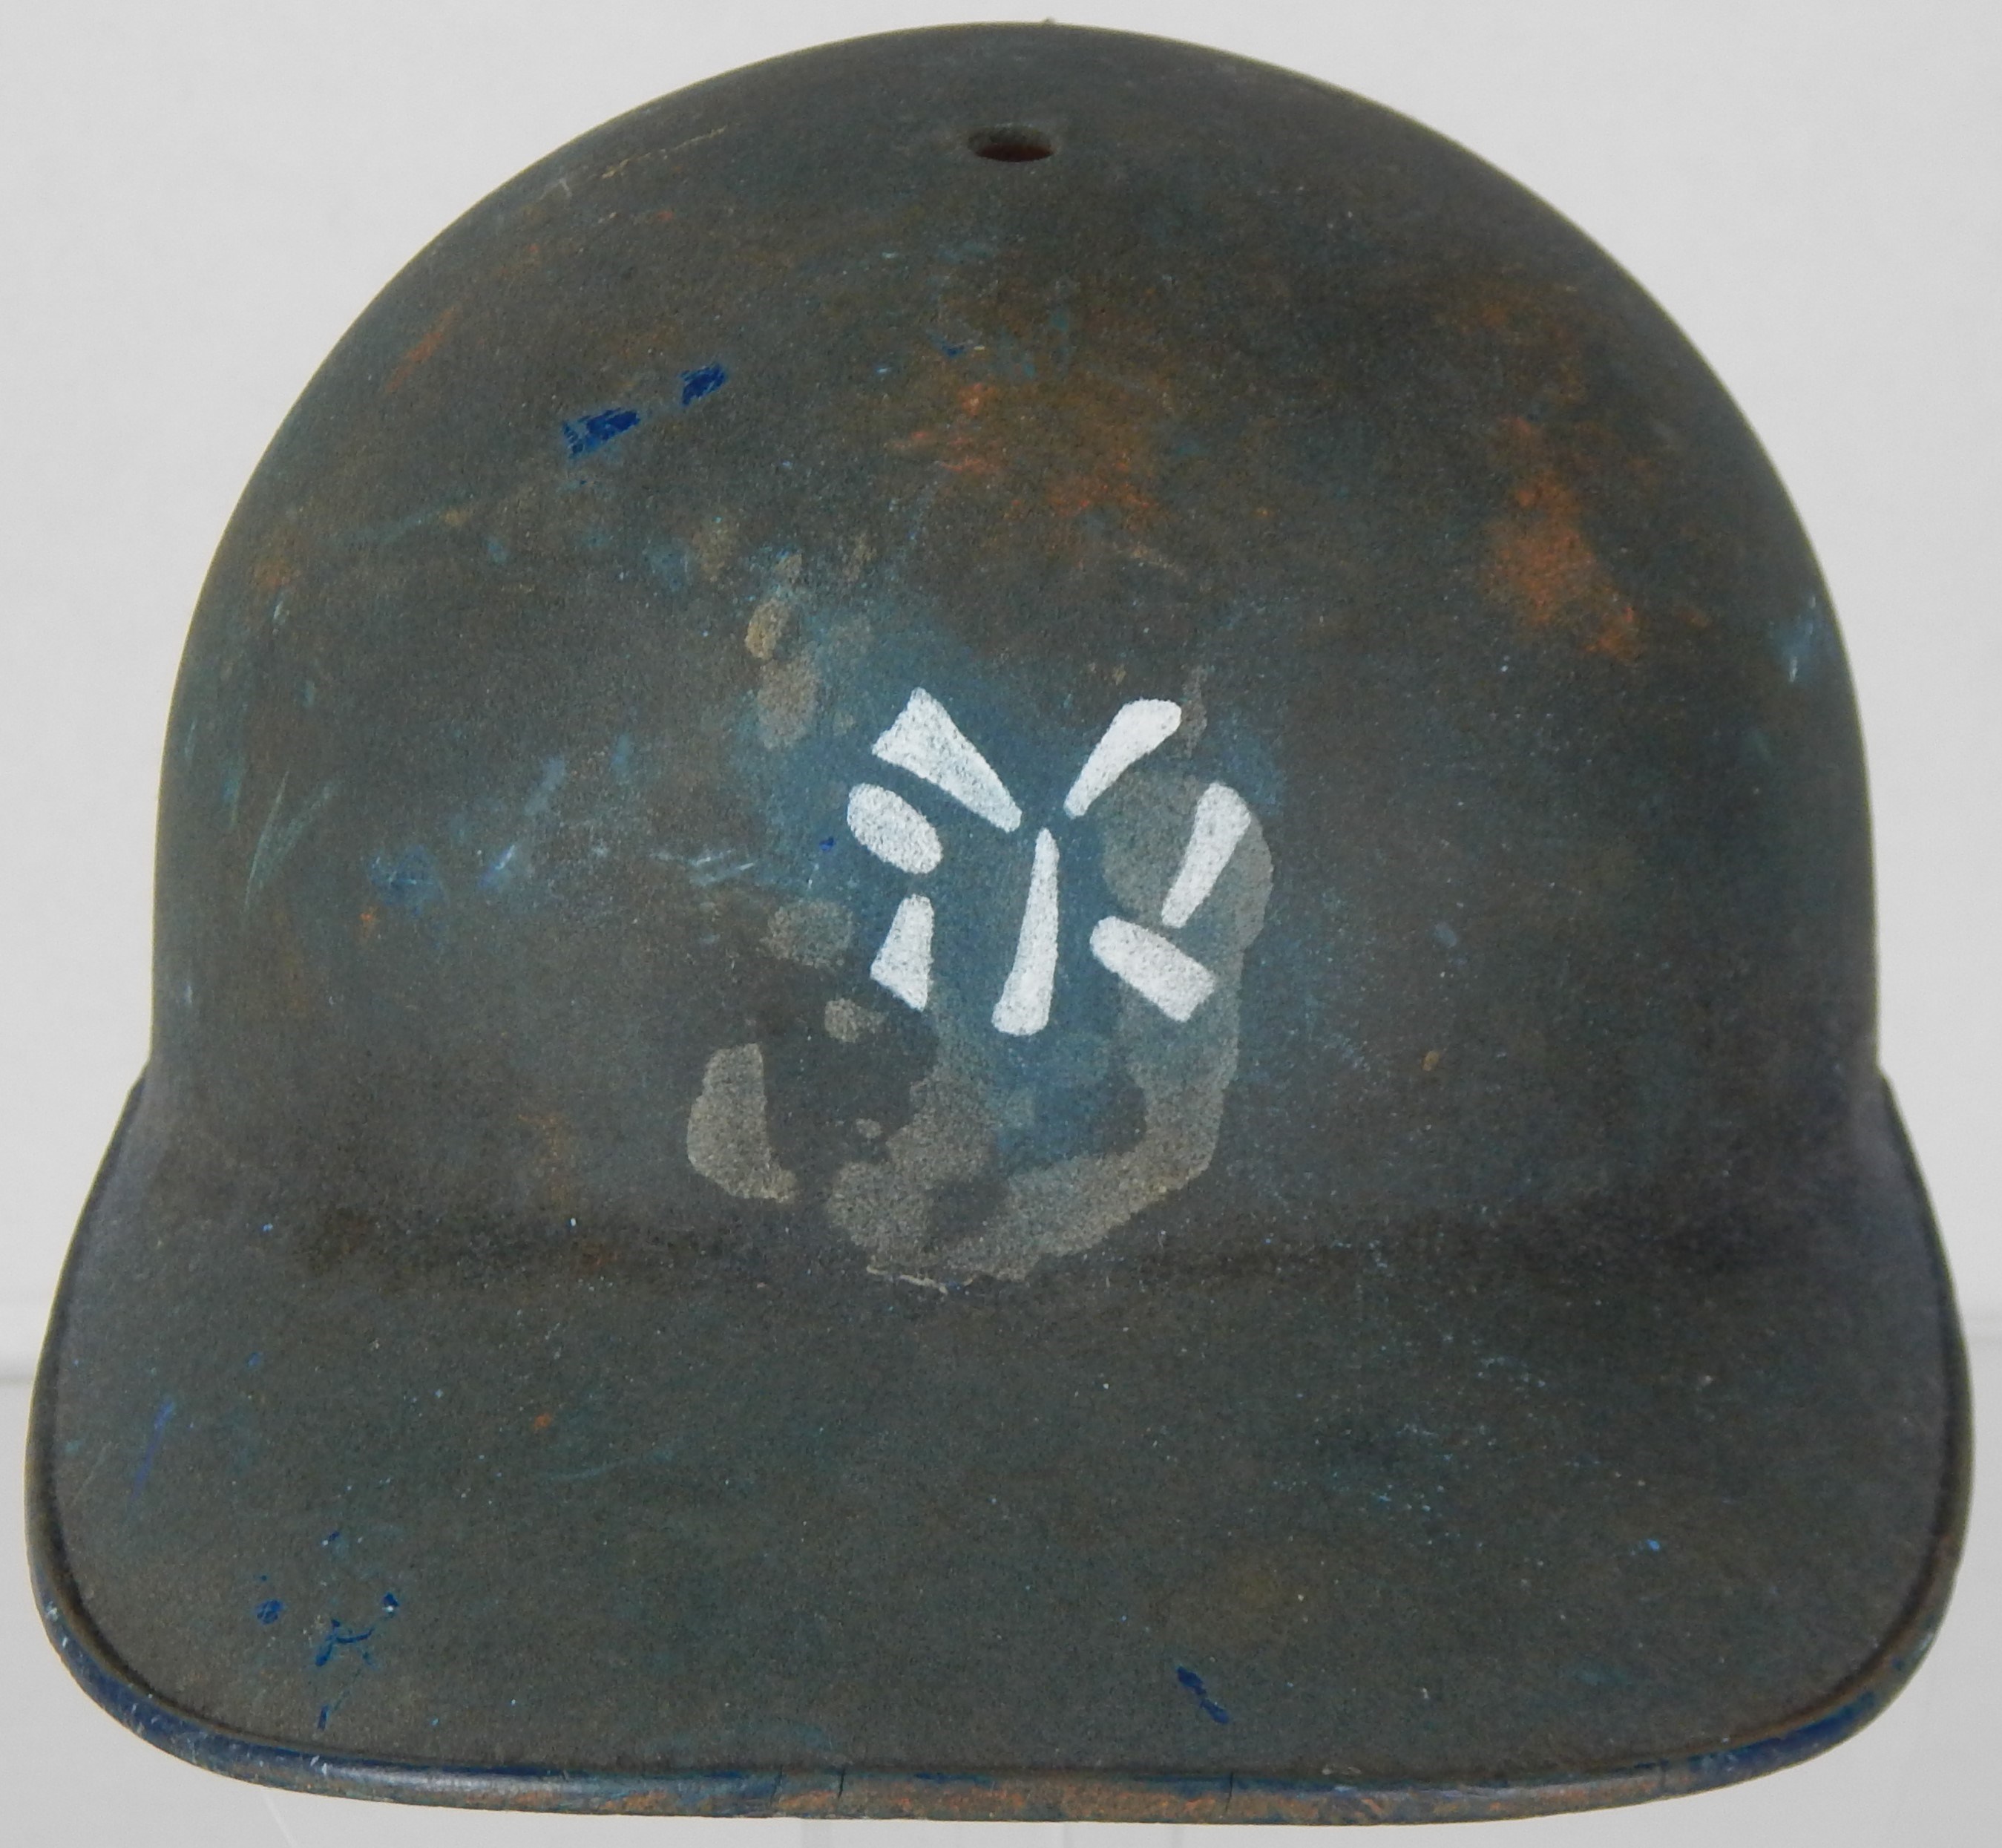 NY Yankees, Giants & Mets - Circa 1961 NY Yankees Batting Helmet